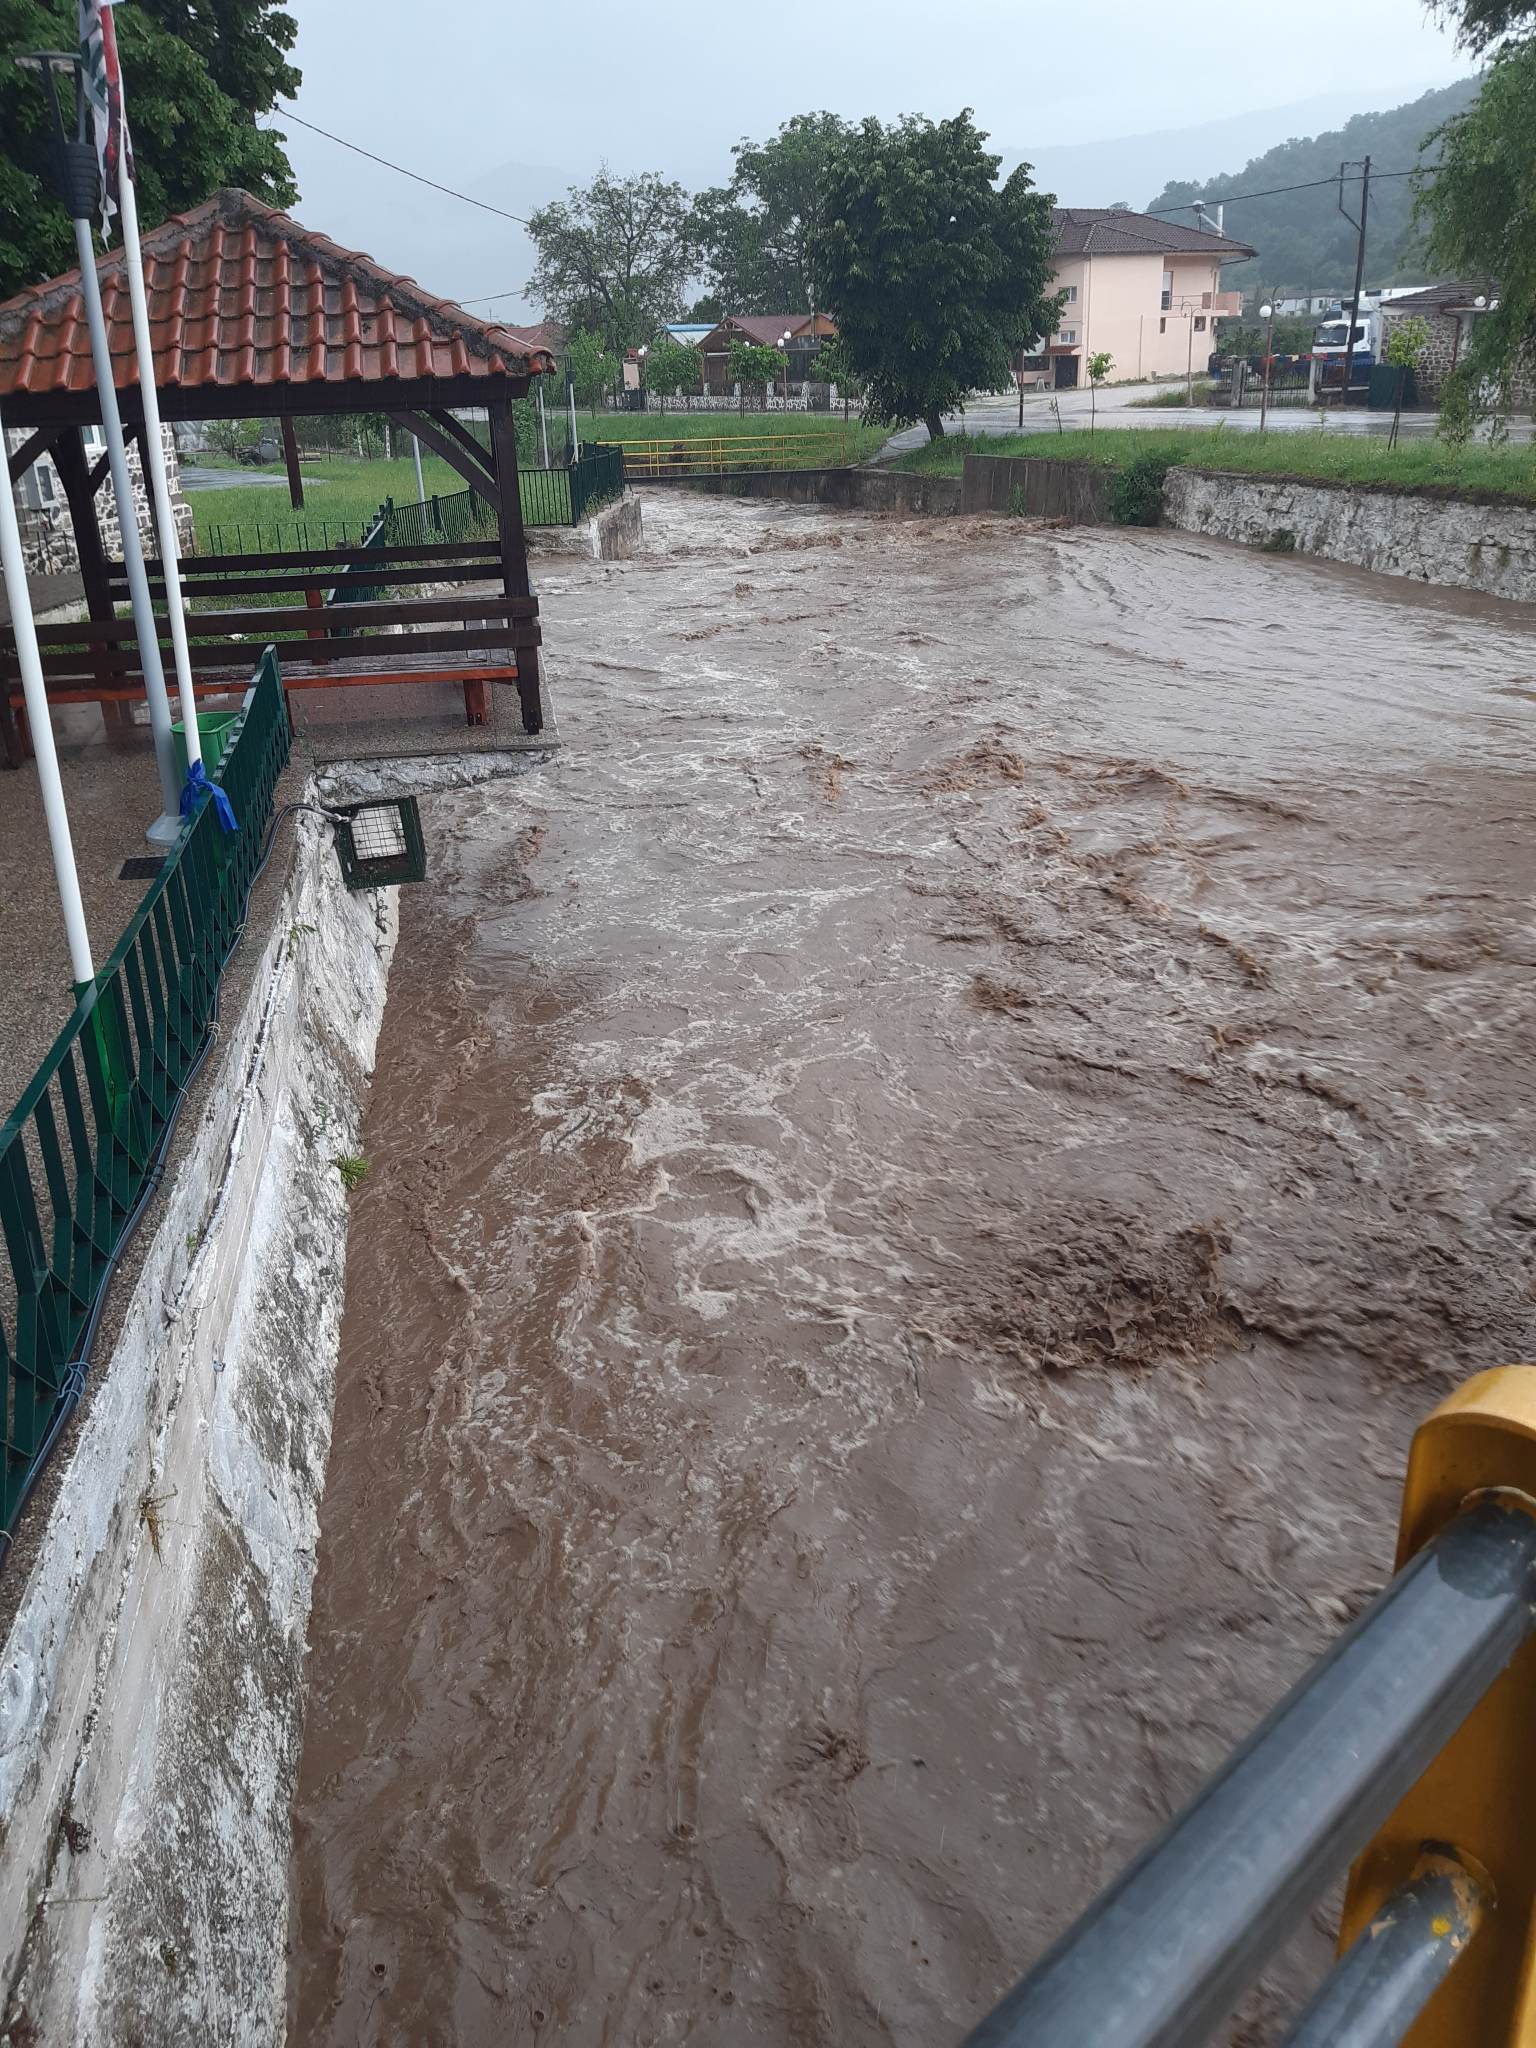 Ξεκινάει αύριο Τρίτη 27 Ιουνίου η διαδικασία των αιτήσεων για τους πληγέντες από τα πλημμυρικά φαινόμενα που έπληξαν το Δήμο Εορδαίας.